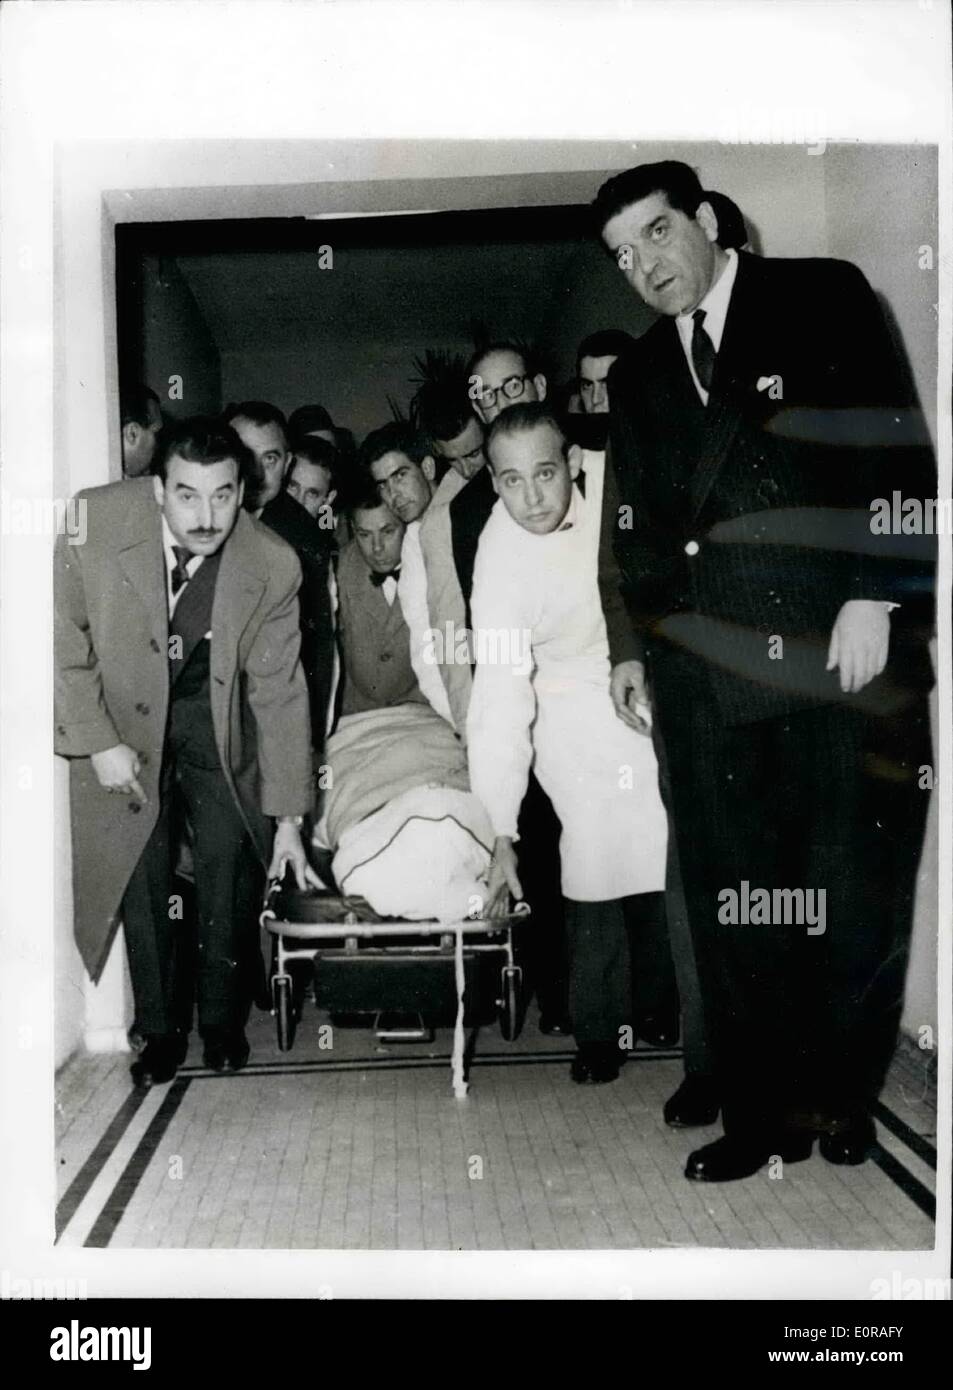 11 novembre 1958 - Tyrone Power meurt d'une crise cardiaque. : la star de cinéma américain Tyrone Power s'est effondré et est mort d'une crise cardiaque à Madrid le samedi, tout en prenant part à une Scène de duel pour le film ''Solomo et Sheba'', dans lequel il prenait la part de Salomon. La photo montre le corps de Tyrone Power est pris à partir de l'hôpital ruber à Madrid à la base aérienne de Torrejon, d'où il seront prises pour les États-Unis. Banque D'Images